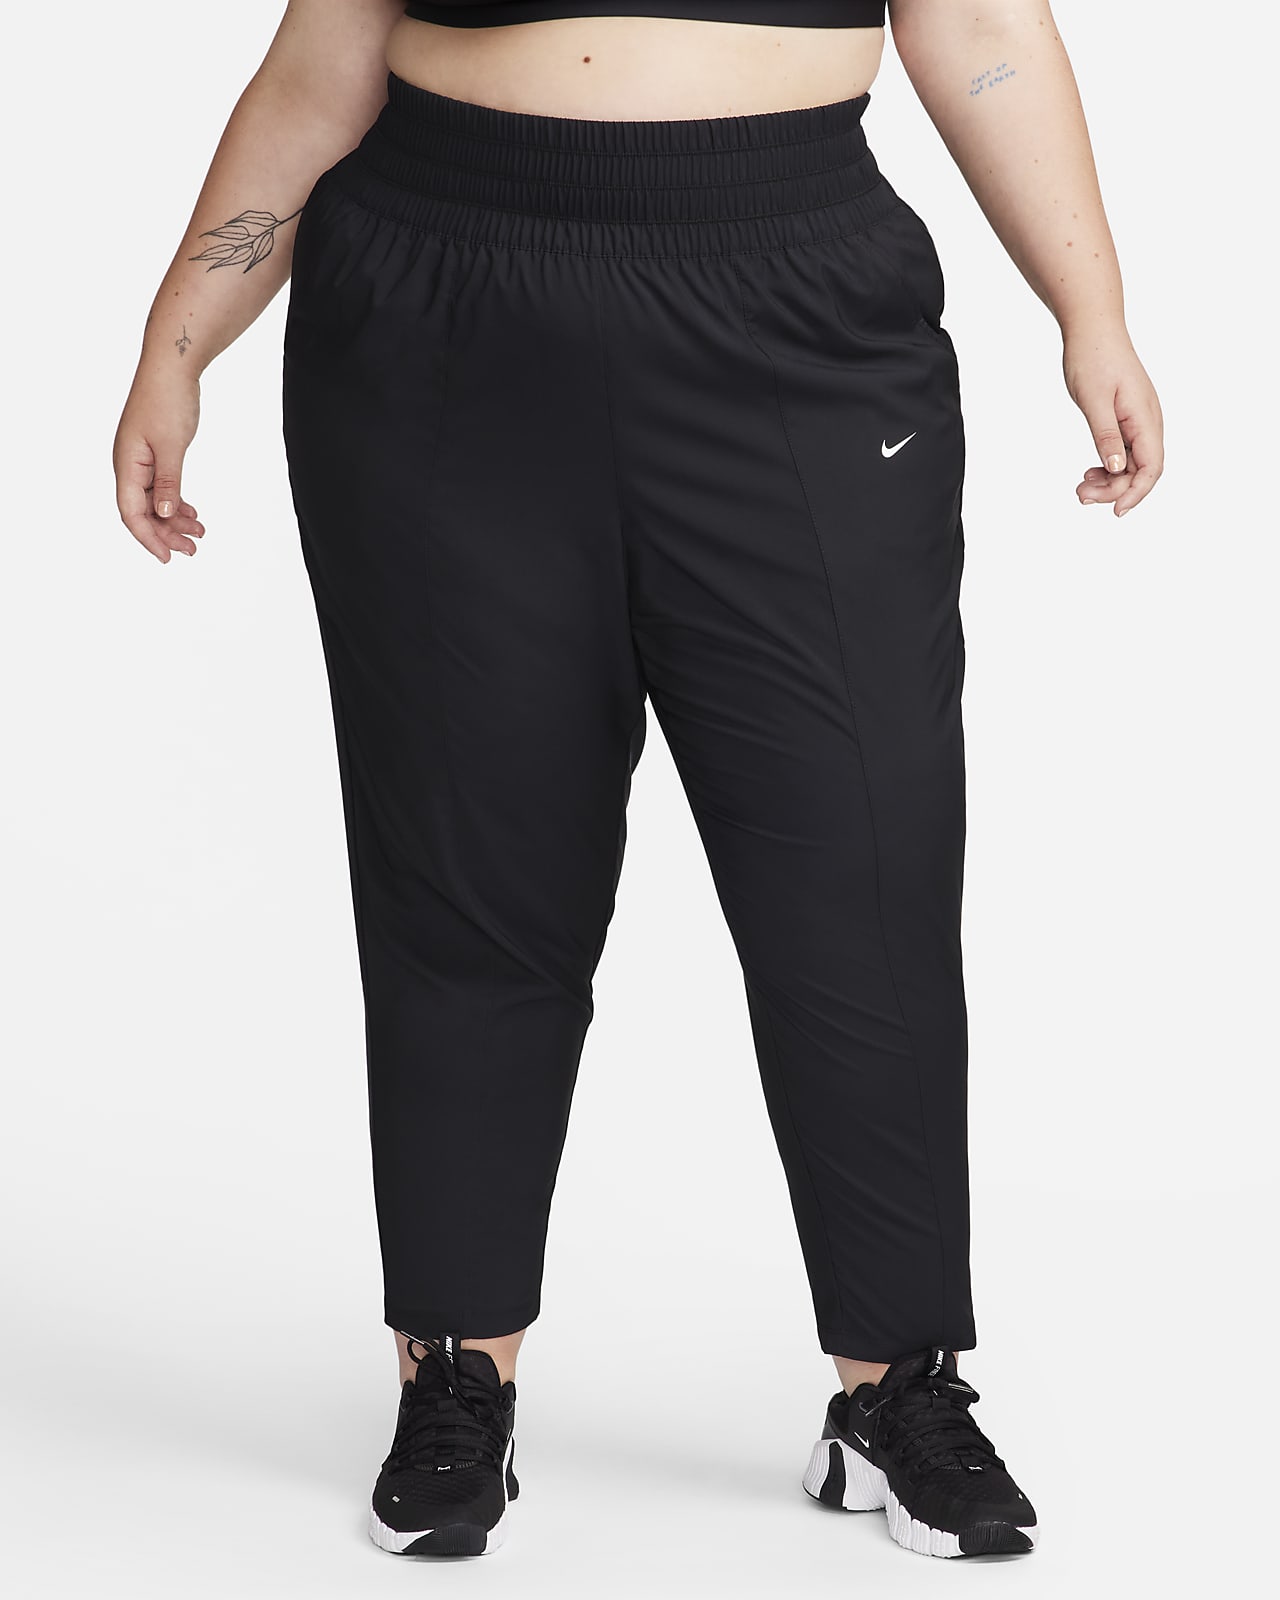 Pants de tiro ultraalto para mujer Nike Dri-FIT (talla grande)